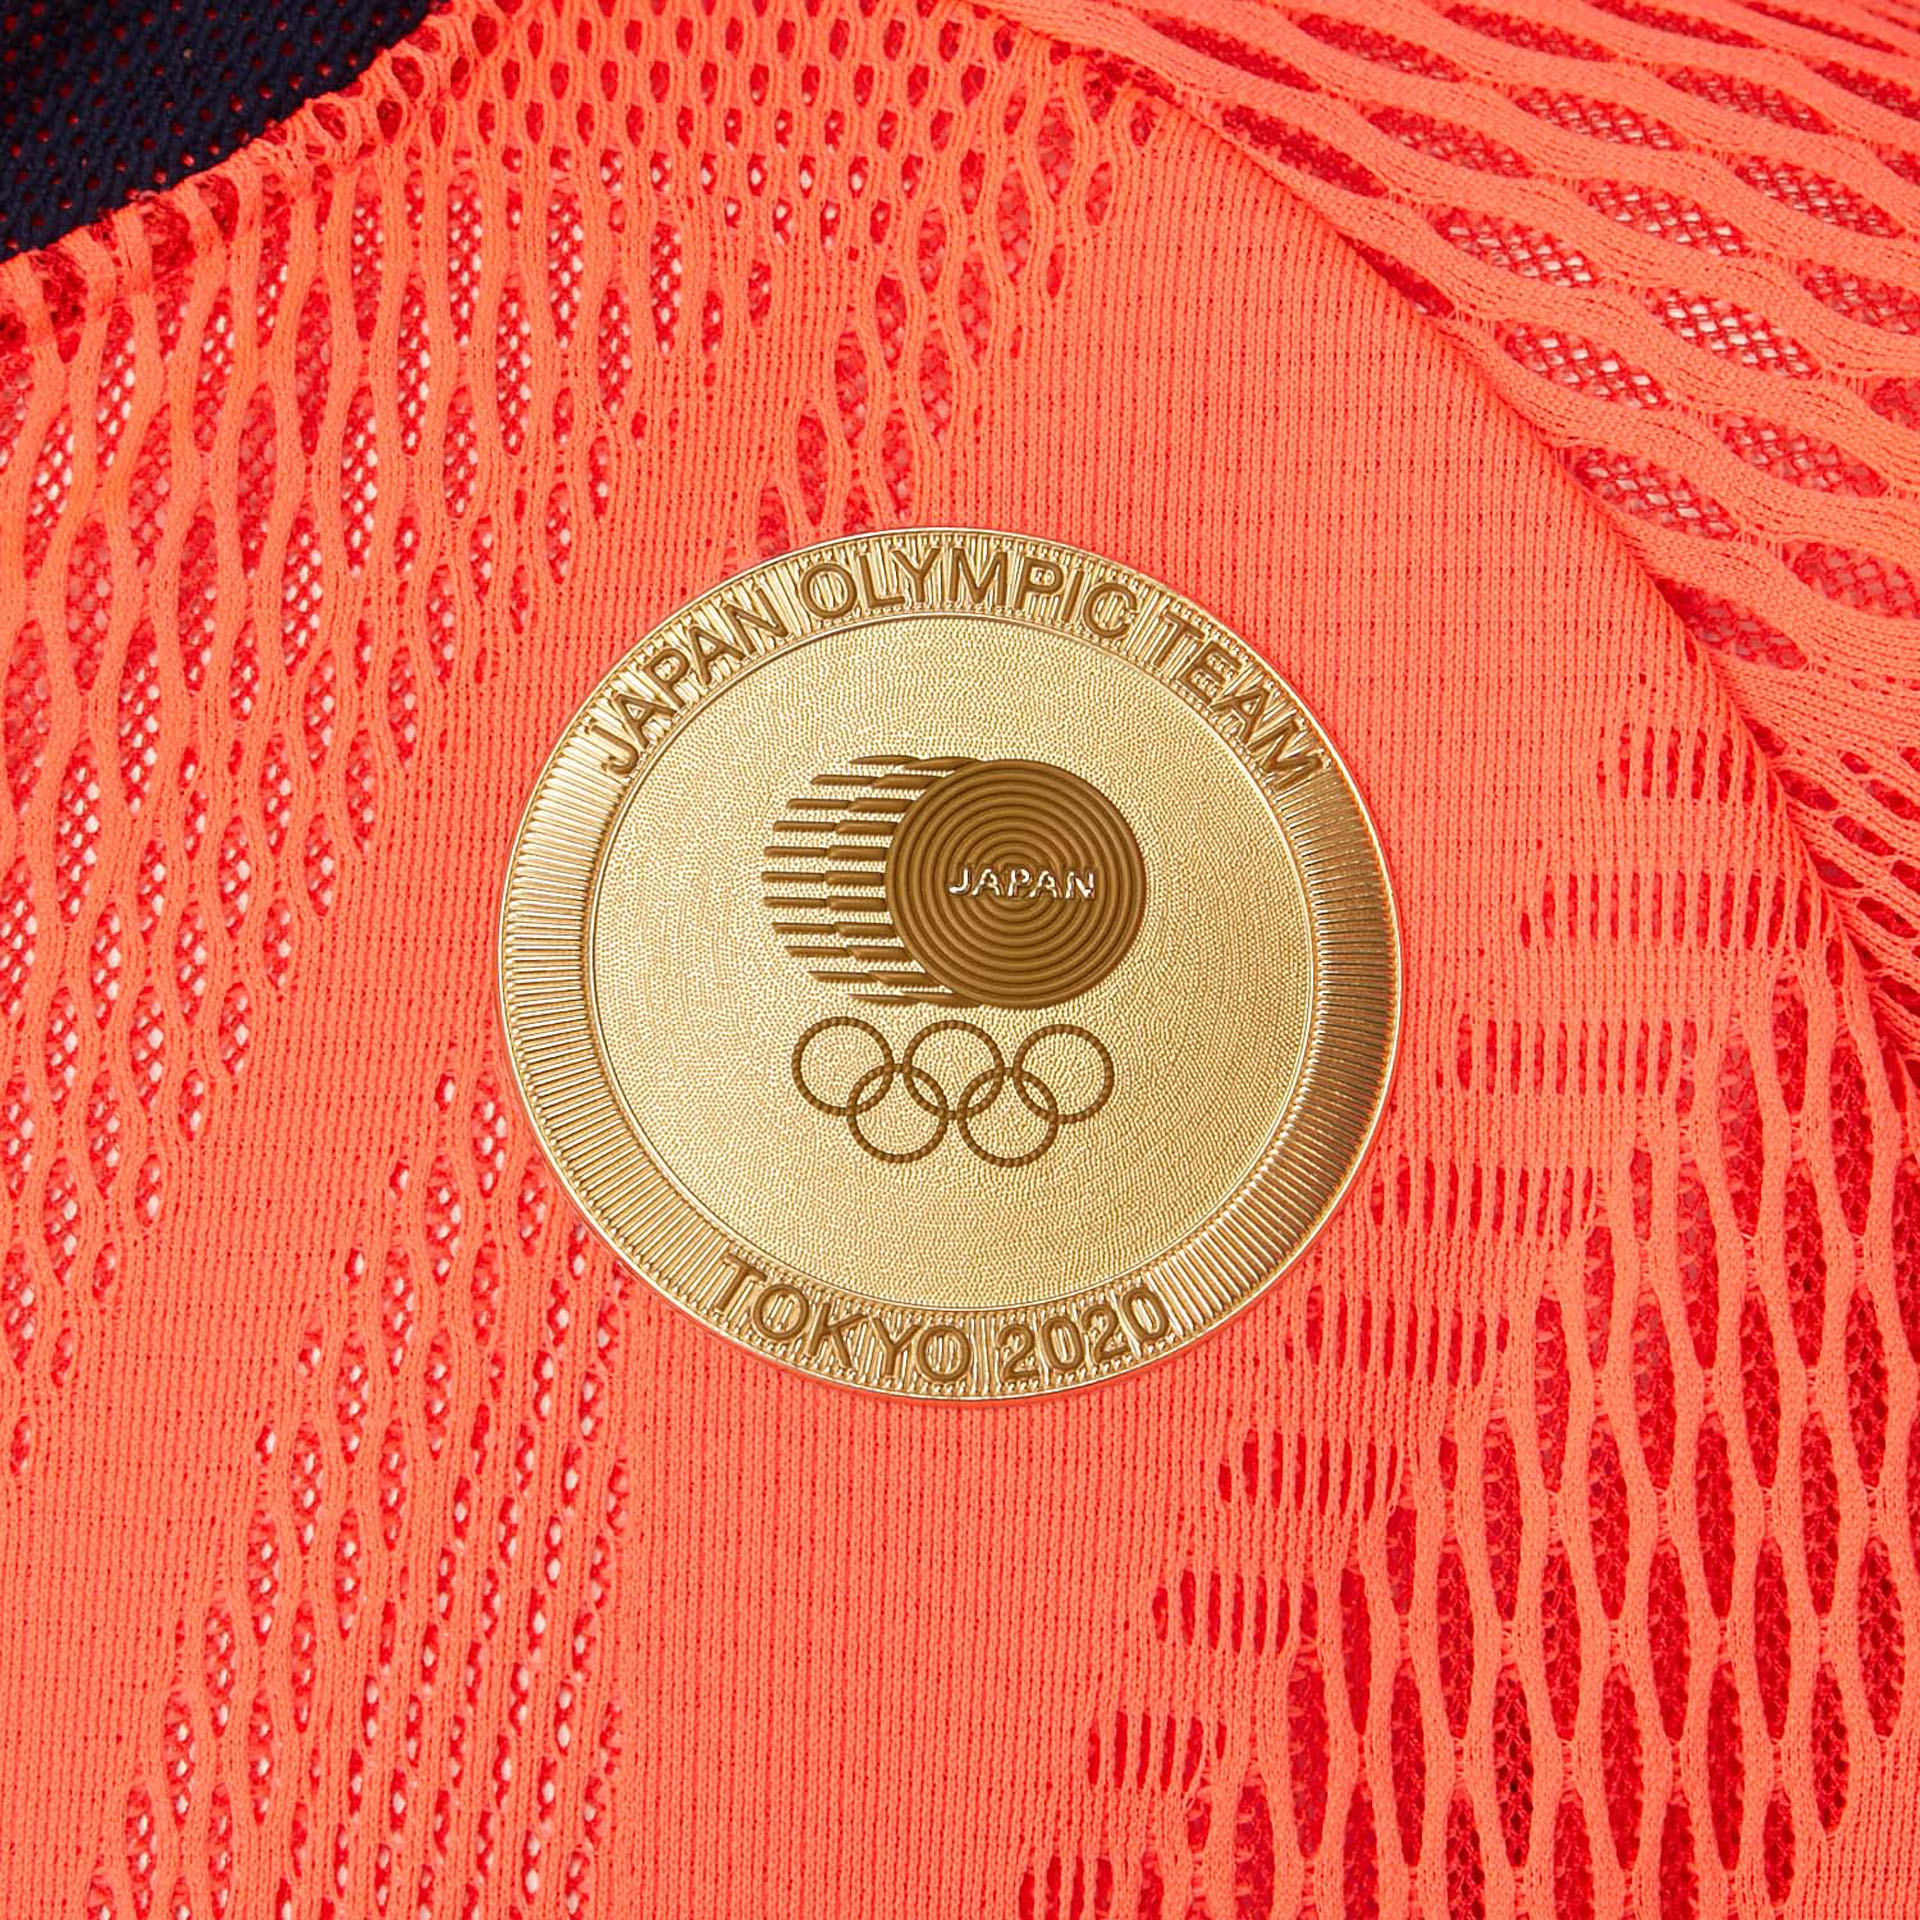 レア 東京オリンピック公式 アシックス ポディウムパンツ JOCエンブレム Lトレーニング用品